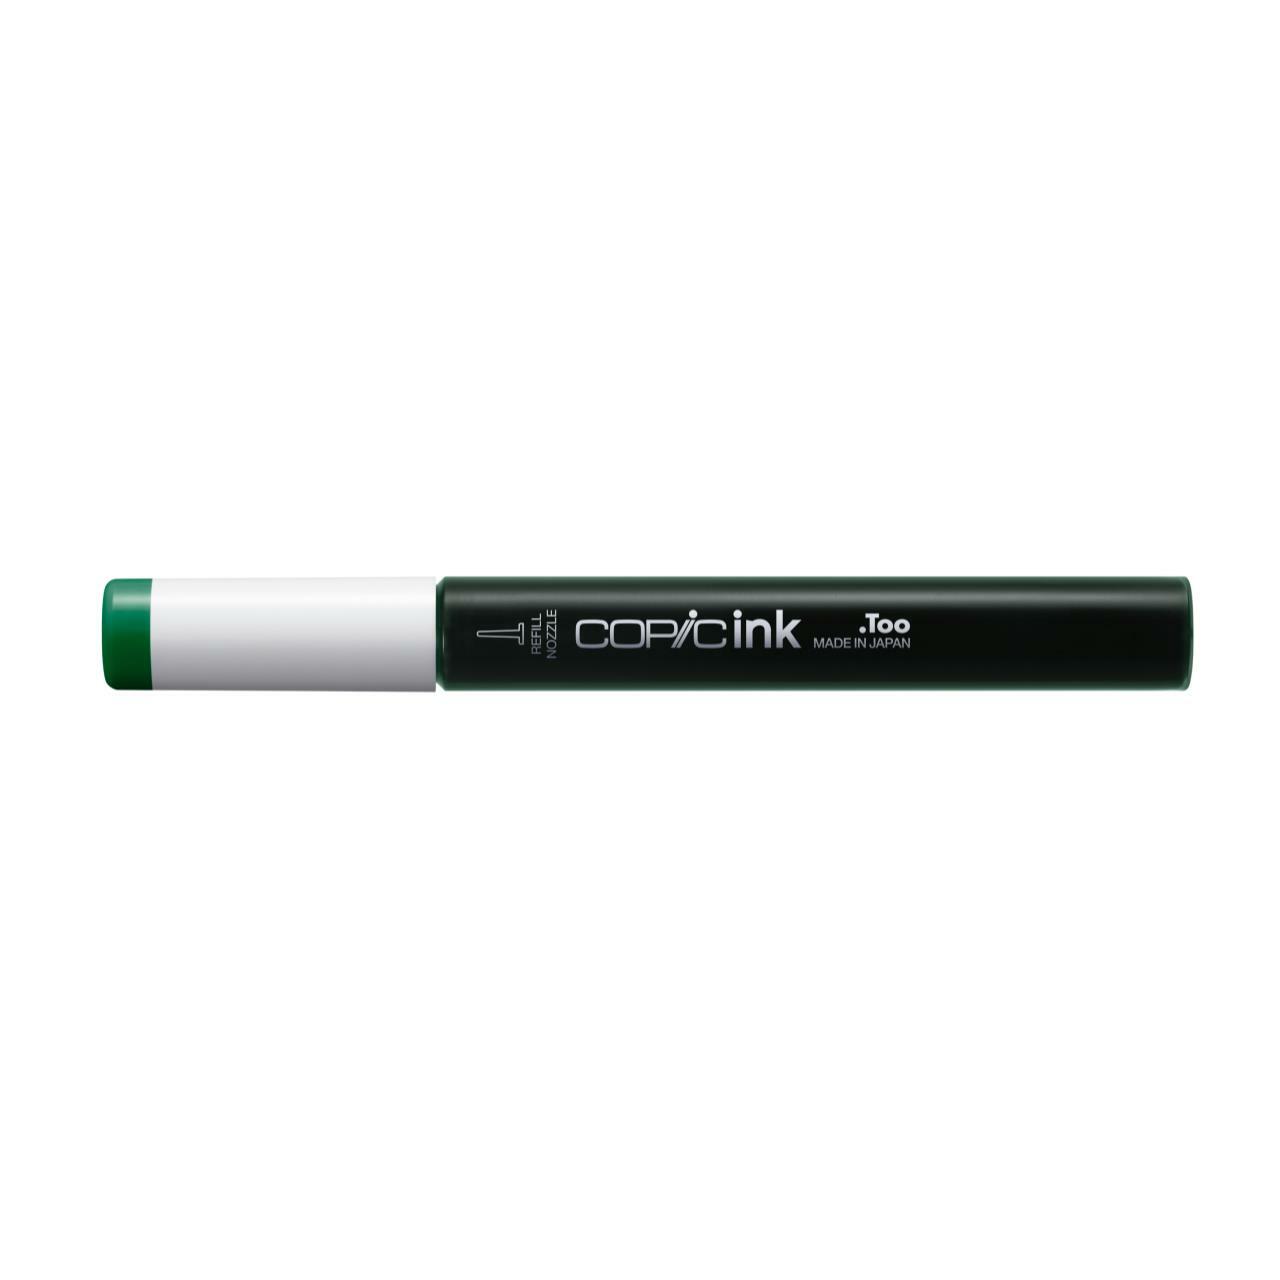 Заправка для маркеров COPIC 12 мл цв. G19 парижская зелень заправка для маркеров copic 12 мл цв n8 серый нейтральный 8